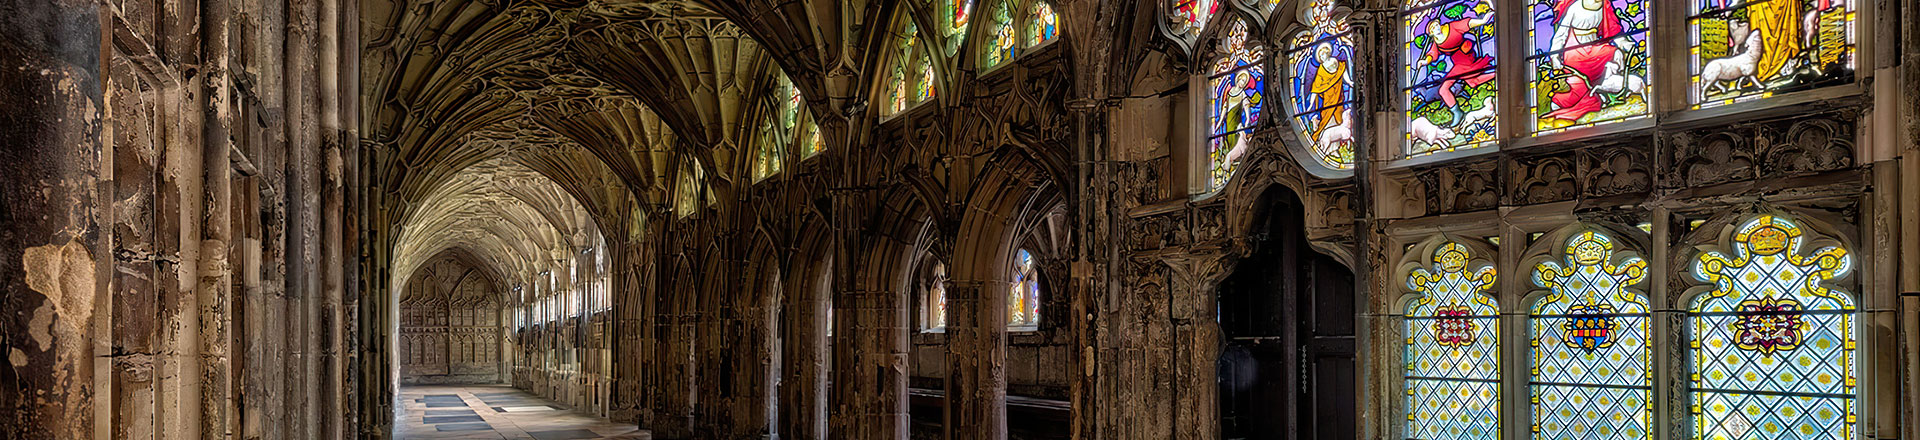 Sieć Dante w zabytkowej katedrze w Gloucester w Wielkiej Brytanii 